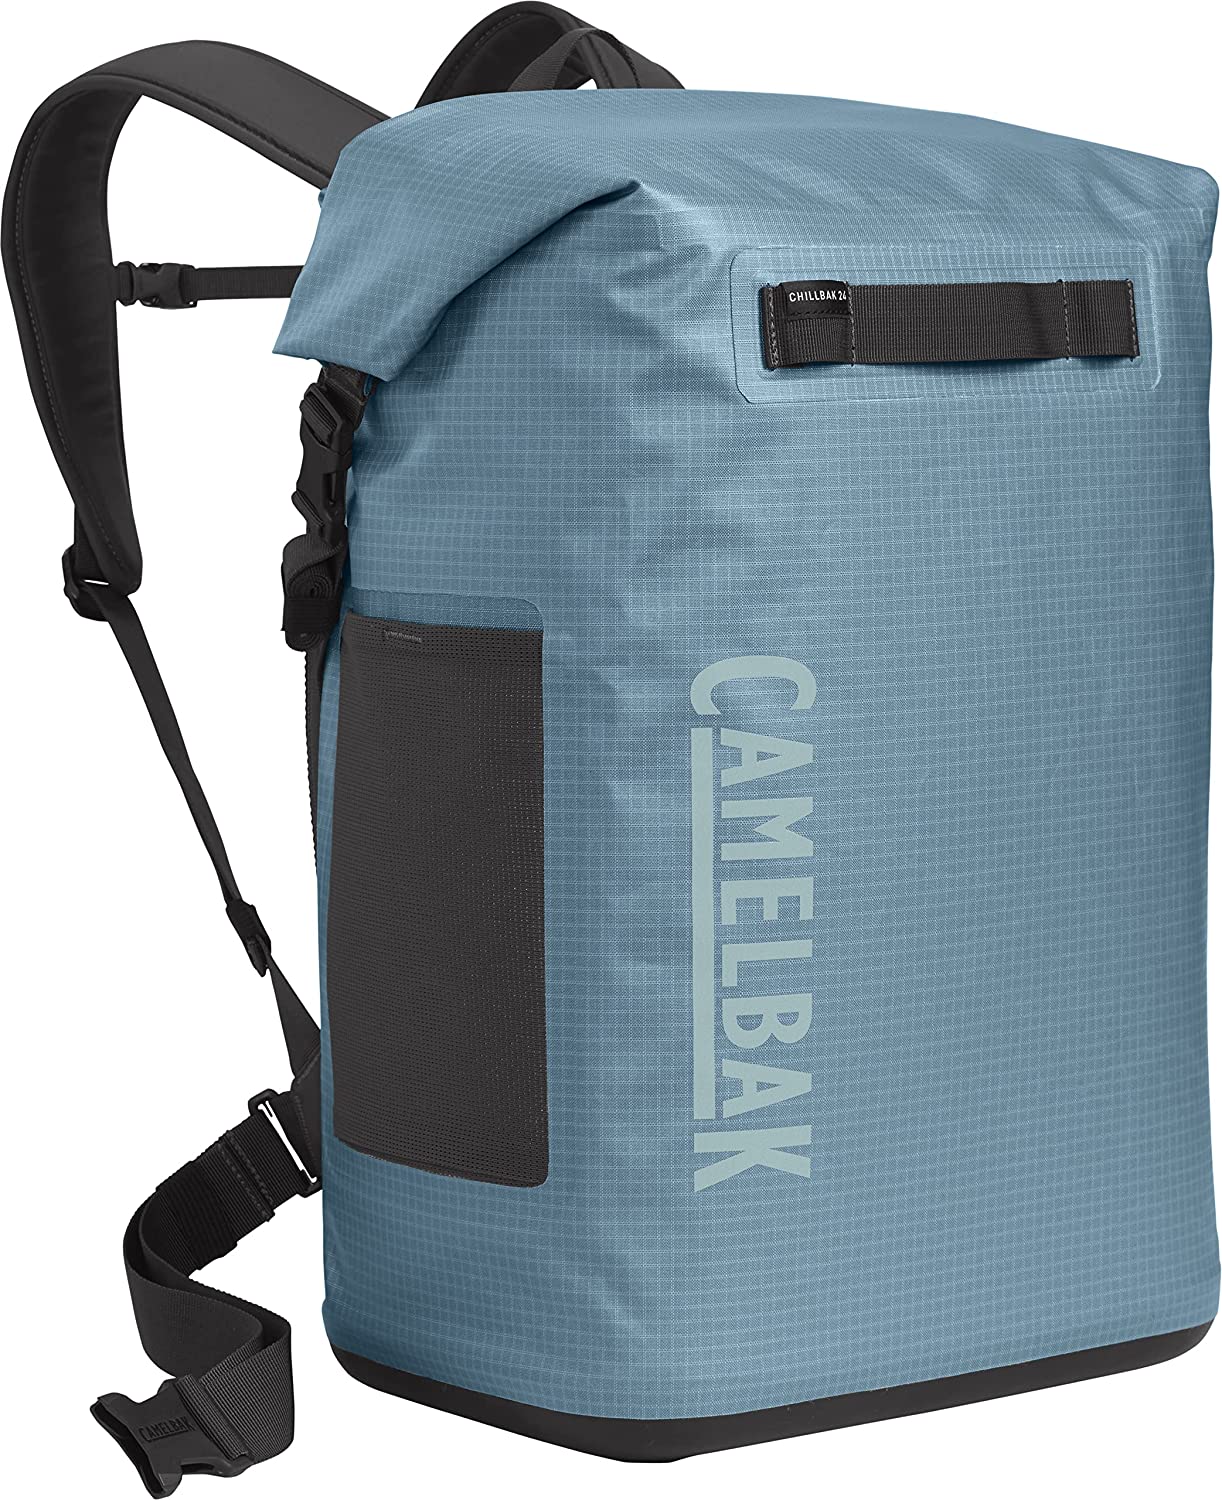 CamelBak ChillBak Pack 30 backpack cooler